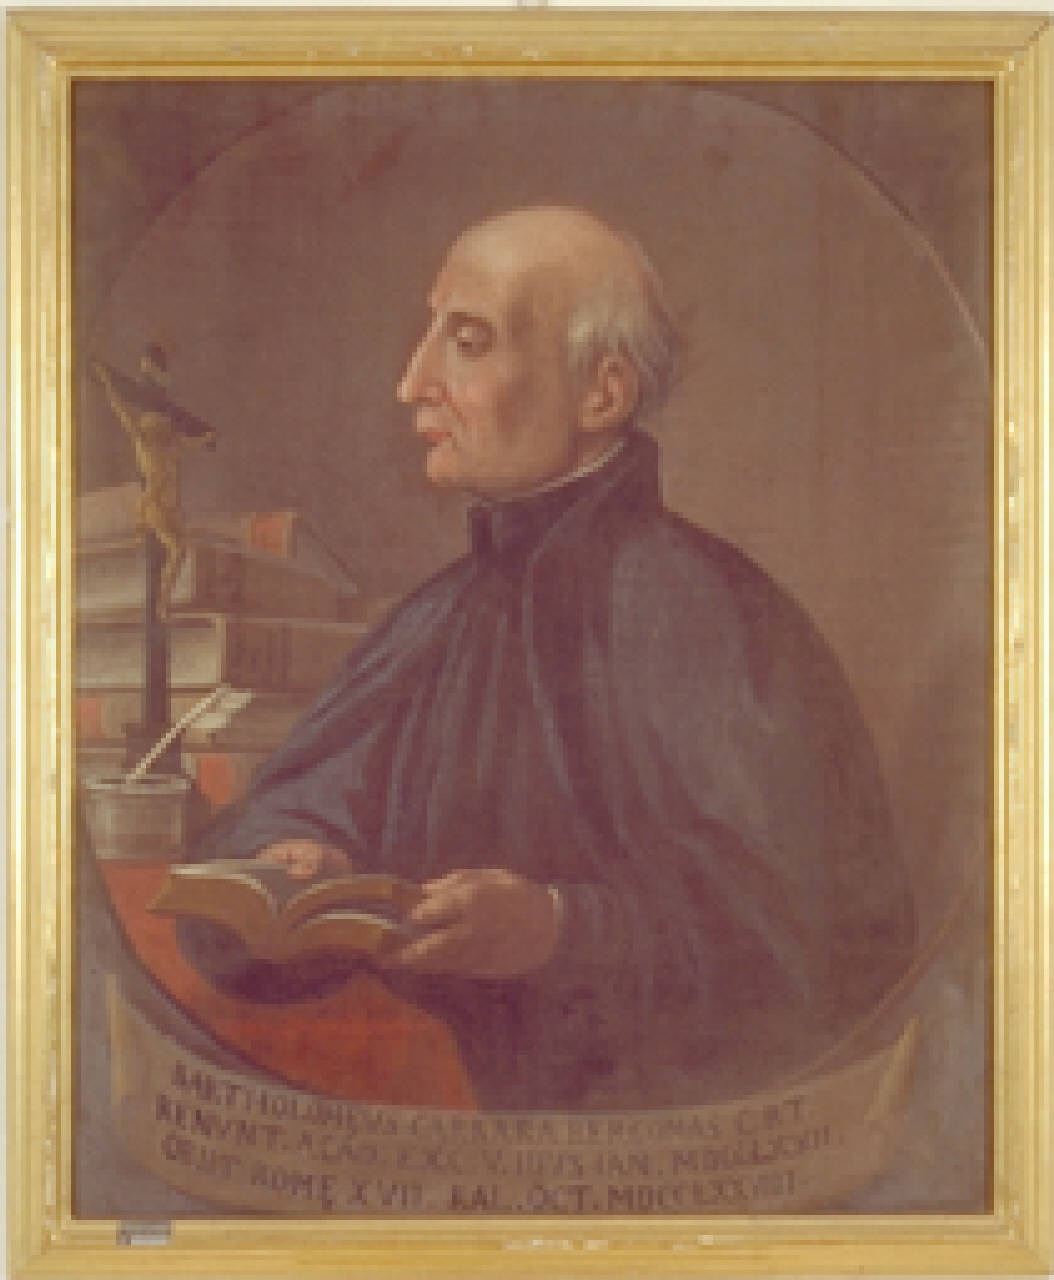 ritratto di Bartolomeo Carrara (dipinto) - ambito bergamasco (sec. XVIII)